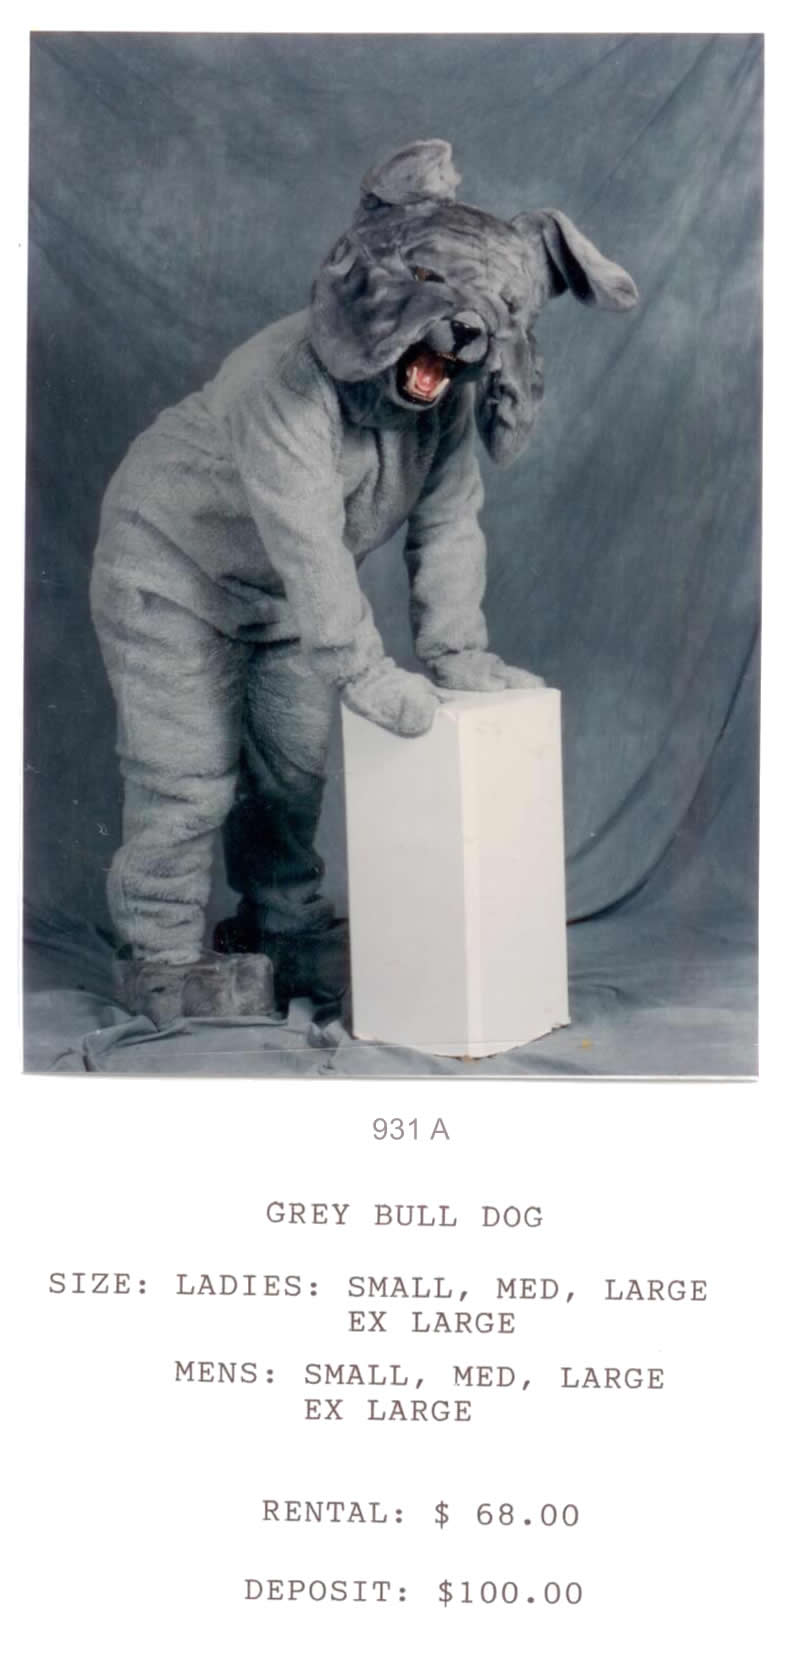 GRAY BULL DOG